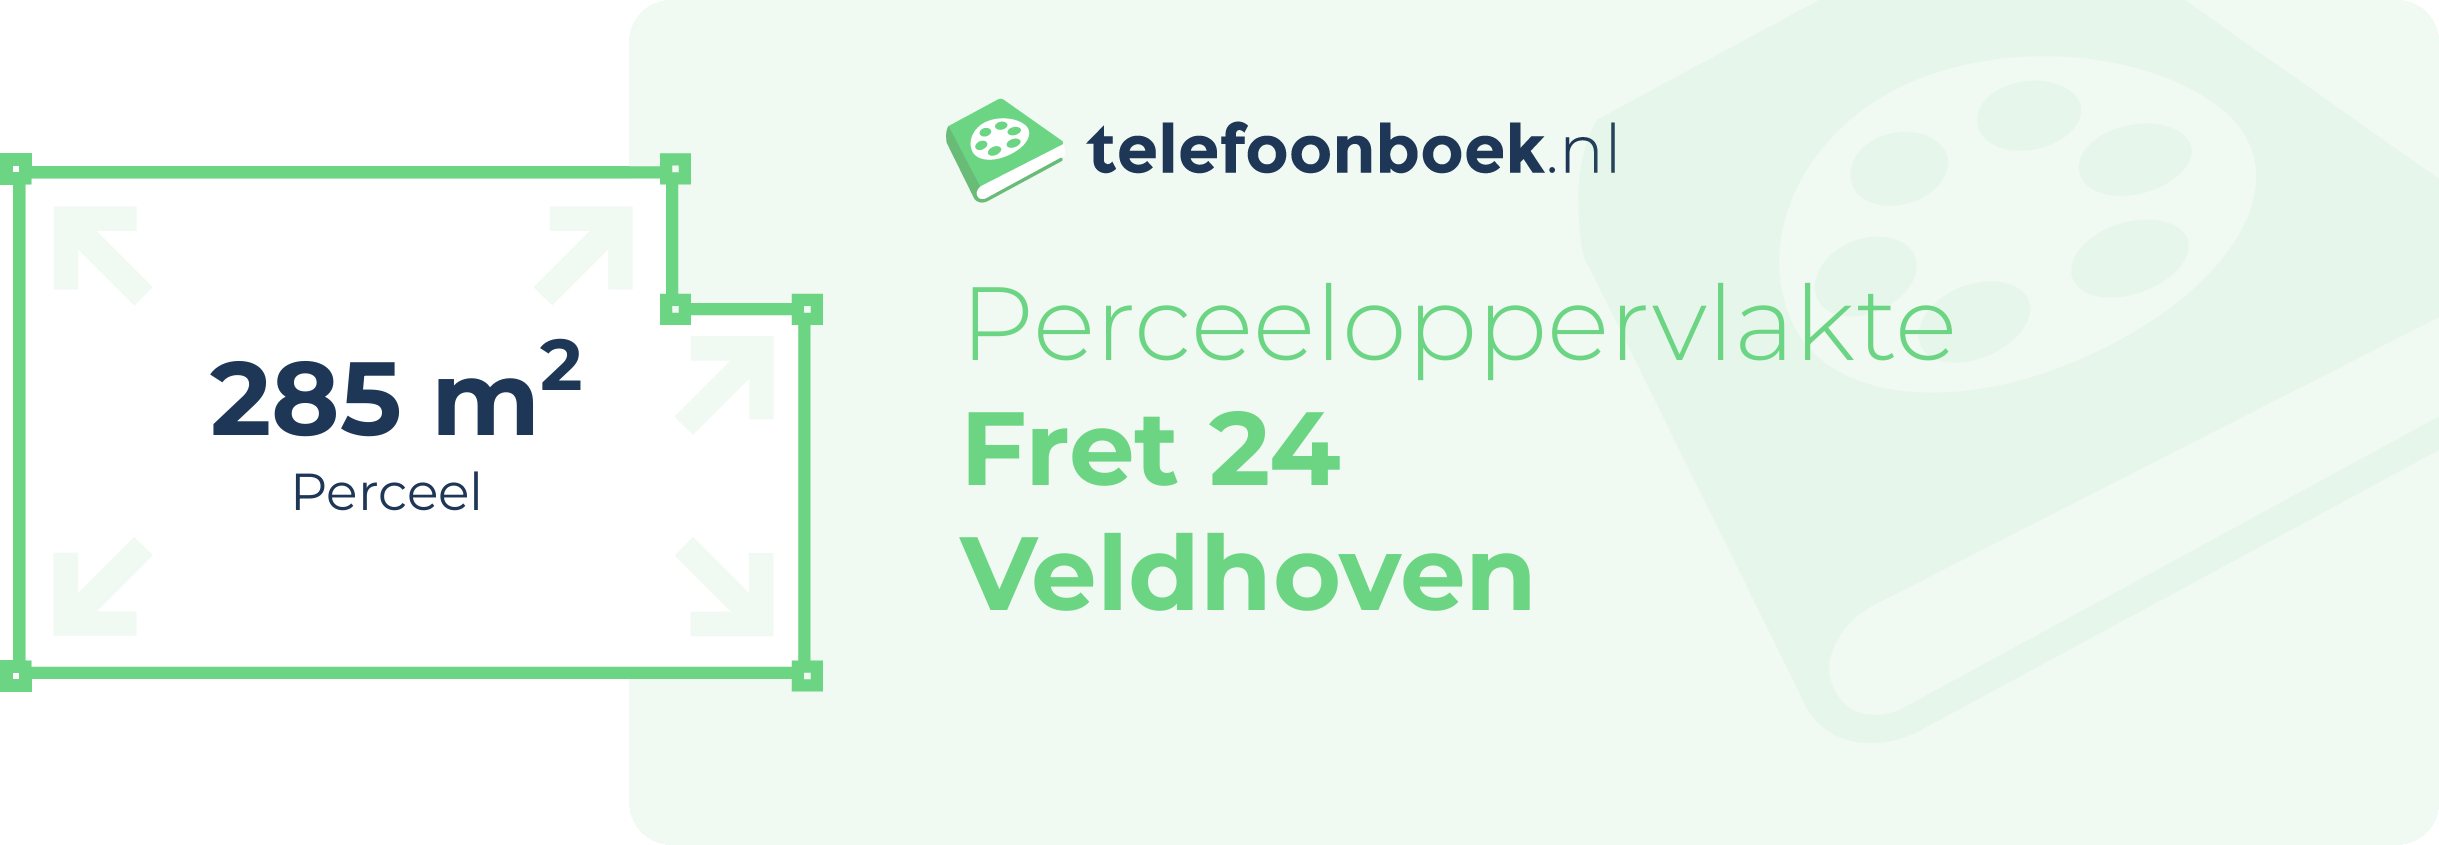 Perceeloppervlakte Fret 24 Veldhoven